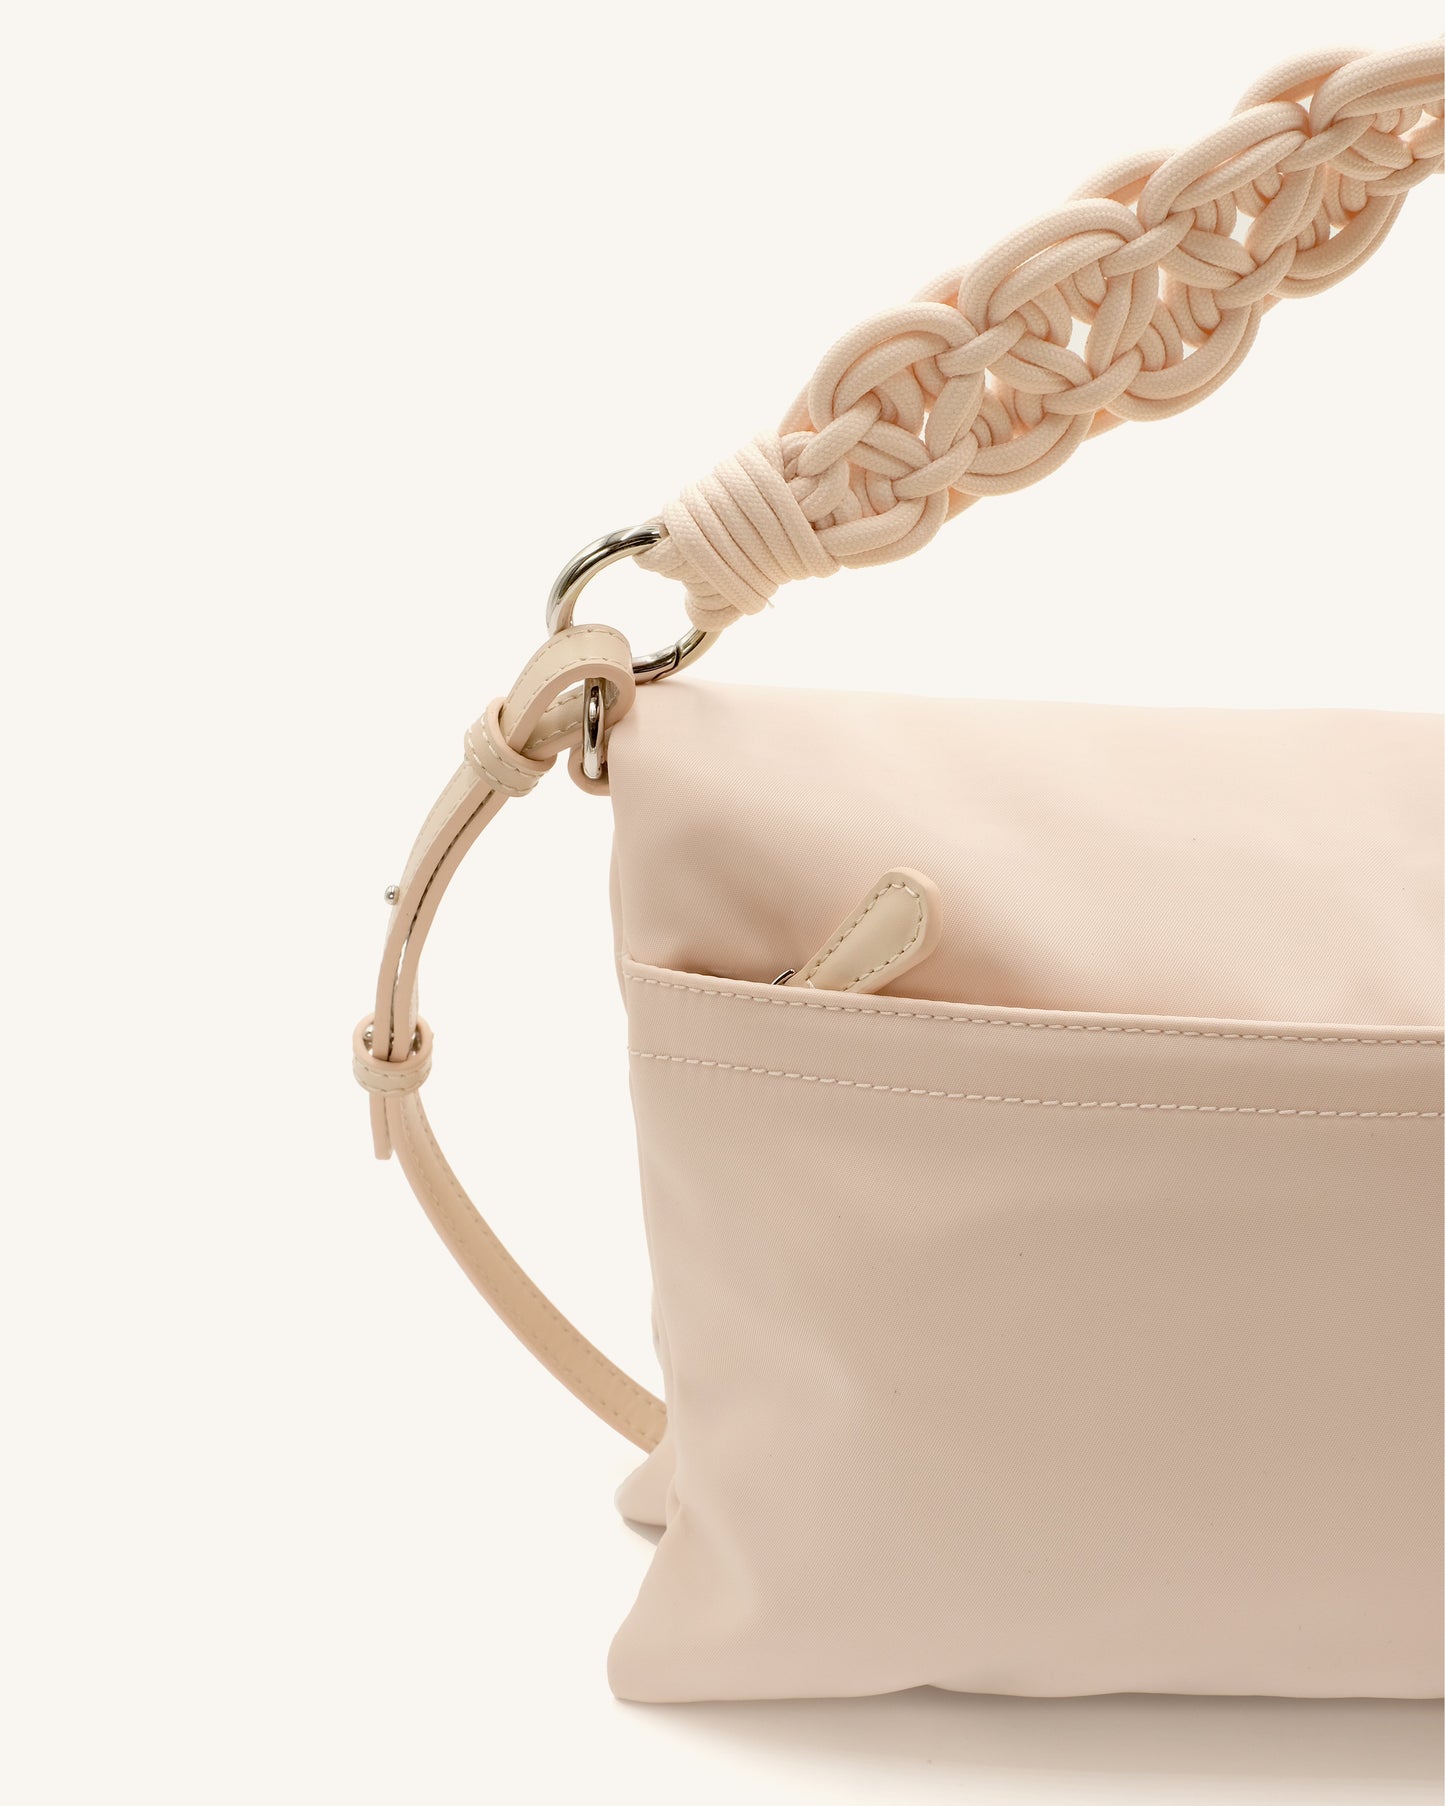 SAMPLE SALE: Pillow Bag - Coconut